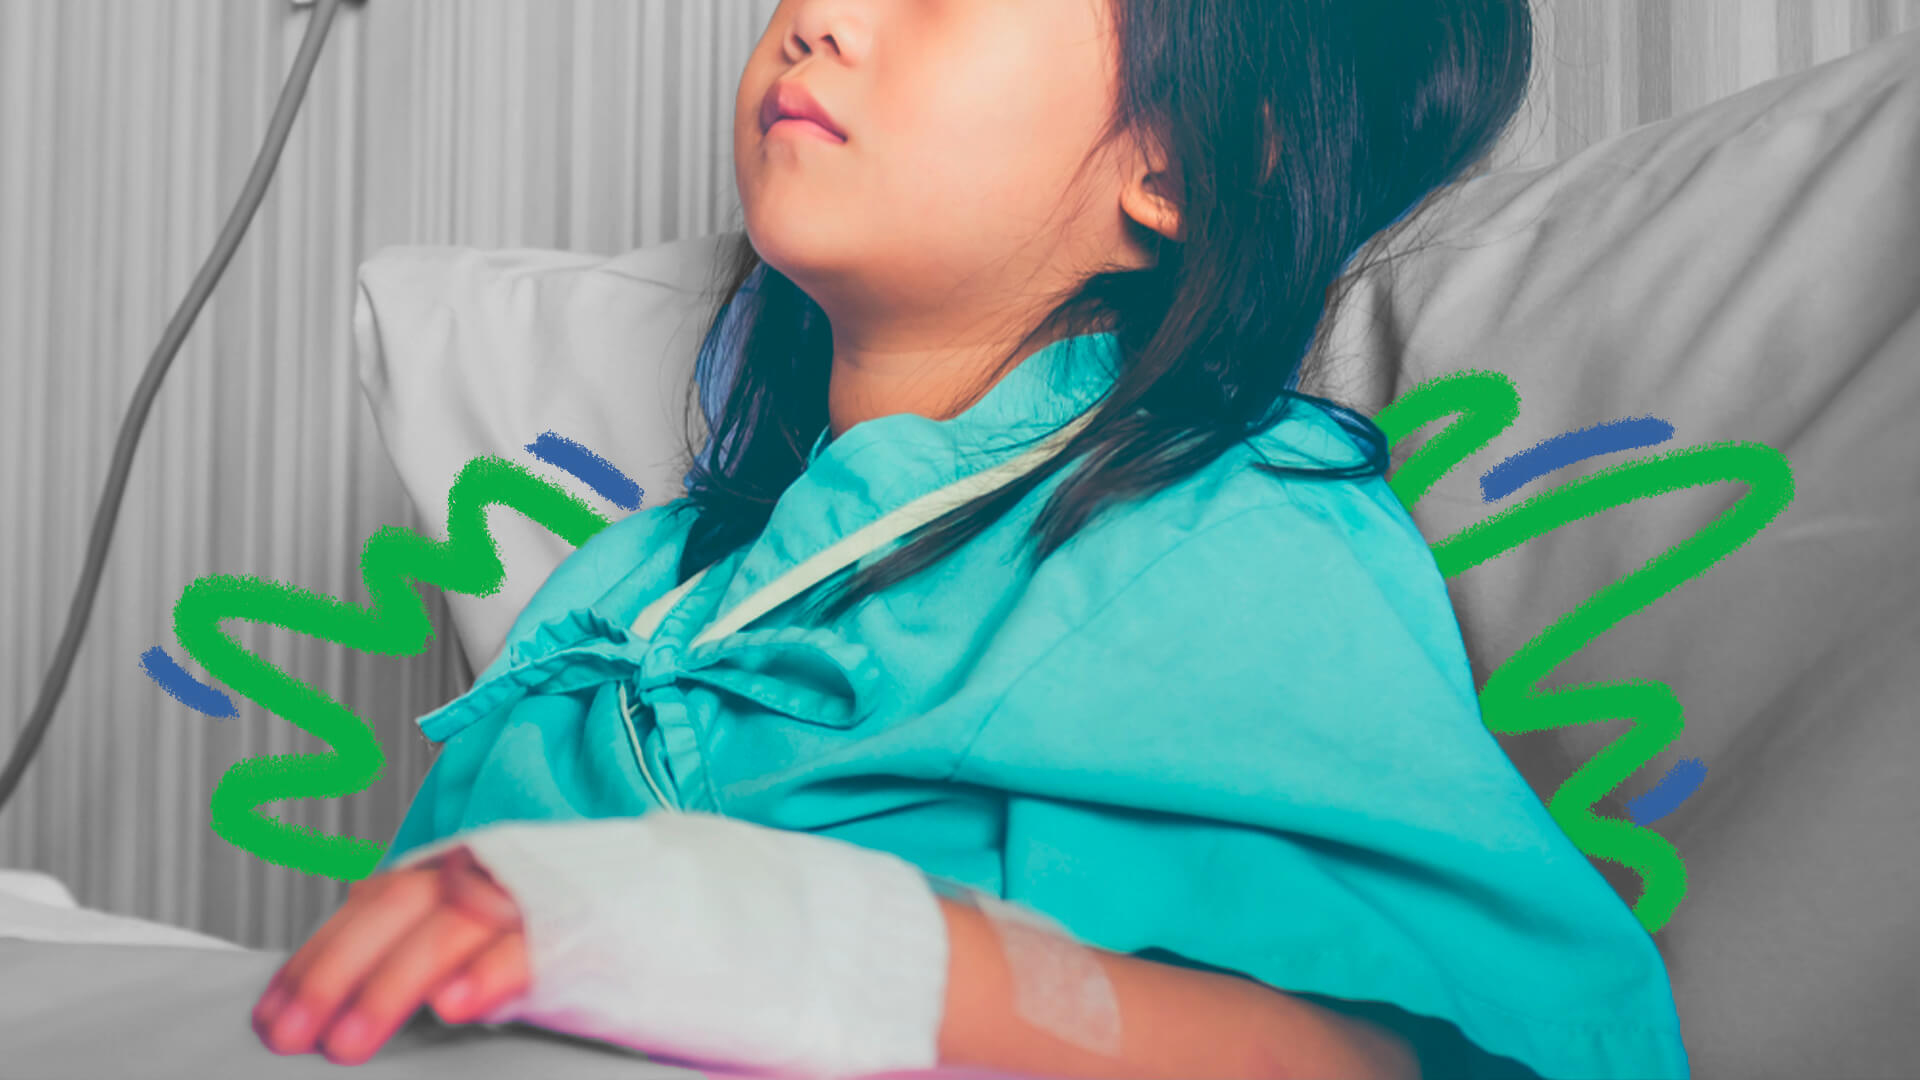 Uma menina de pele clara está em um leito de hospital. A imagem ilustra matéria sobre doação de órgãos e transplantes.